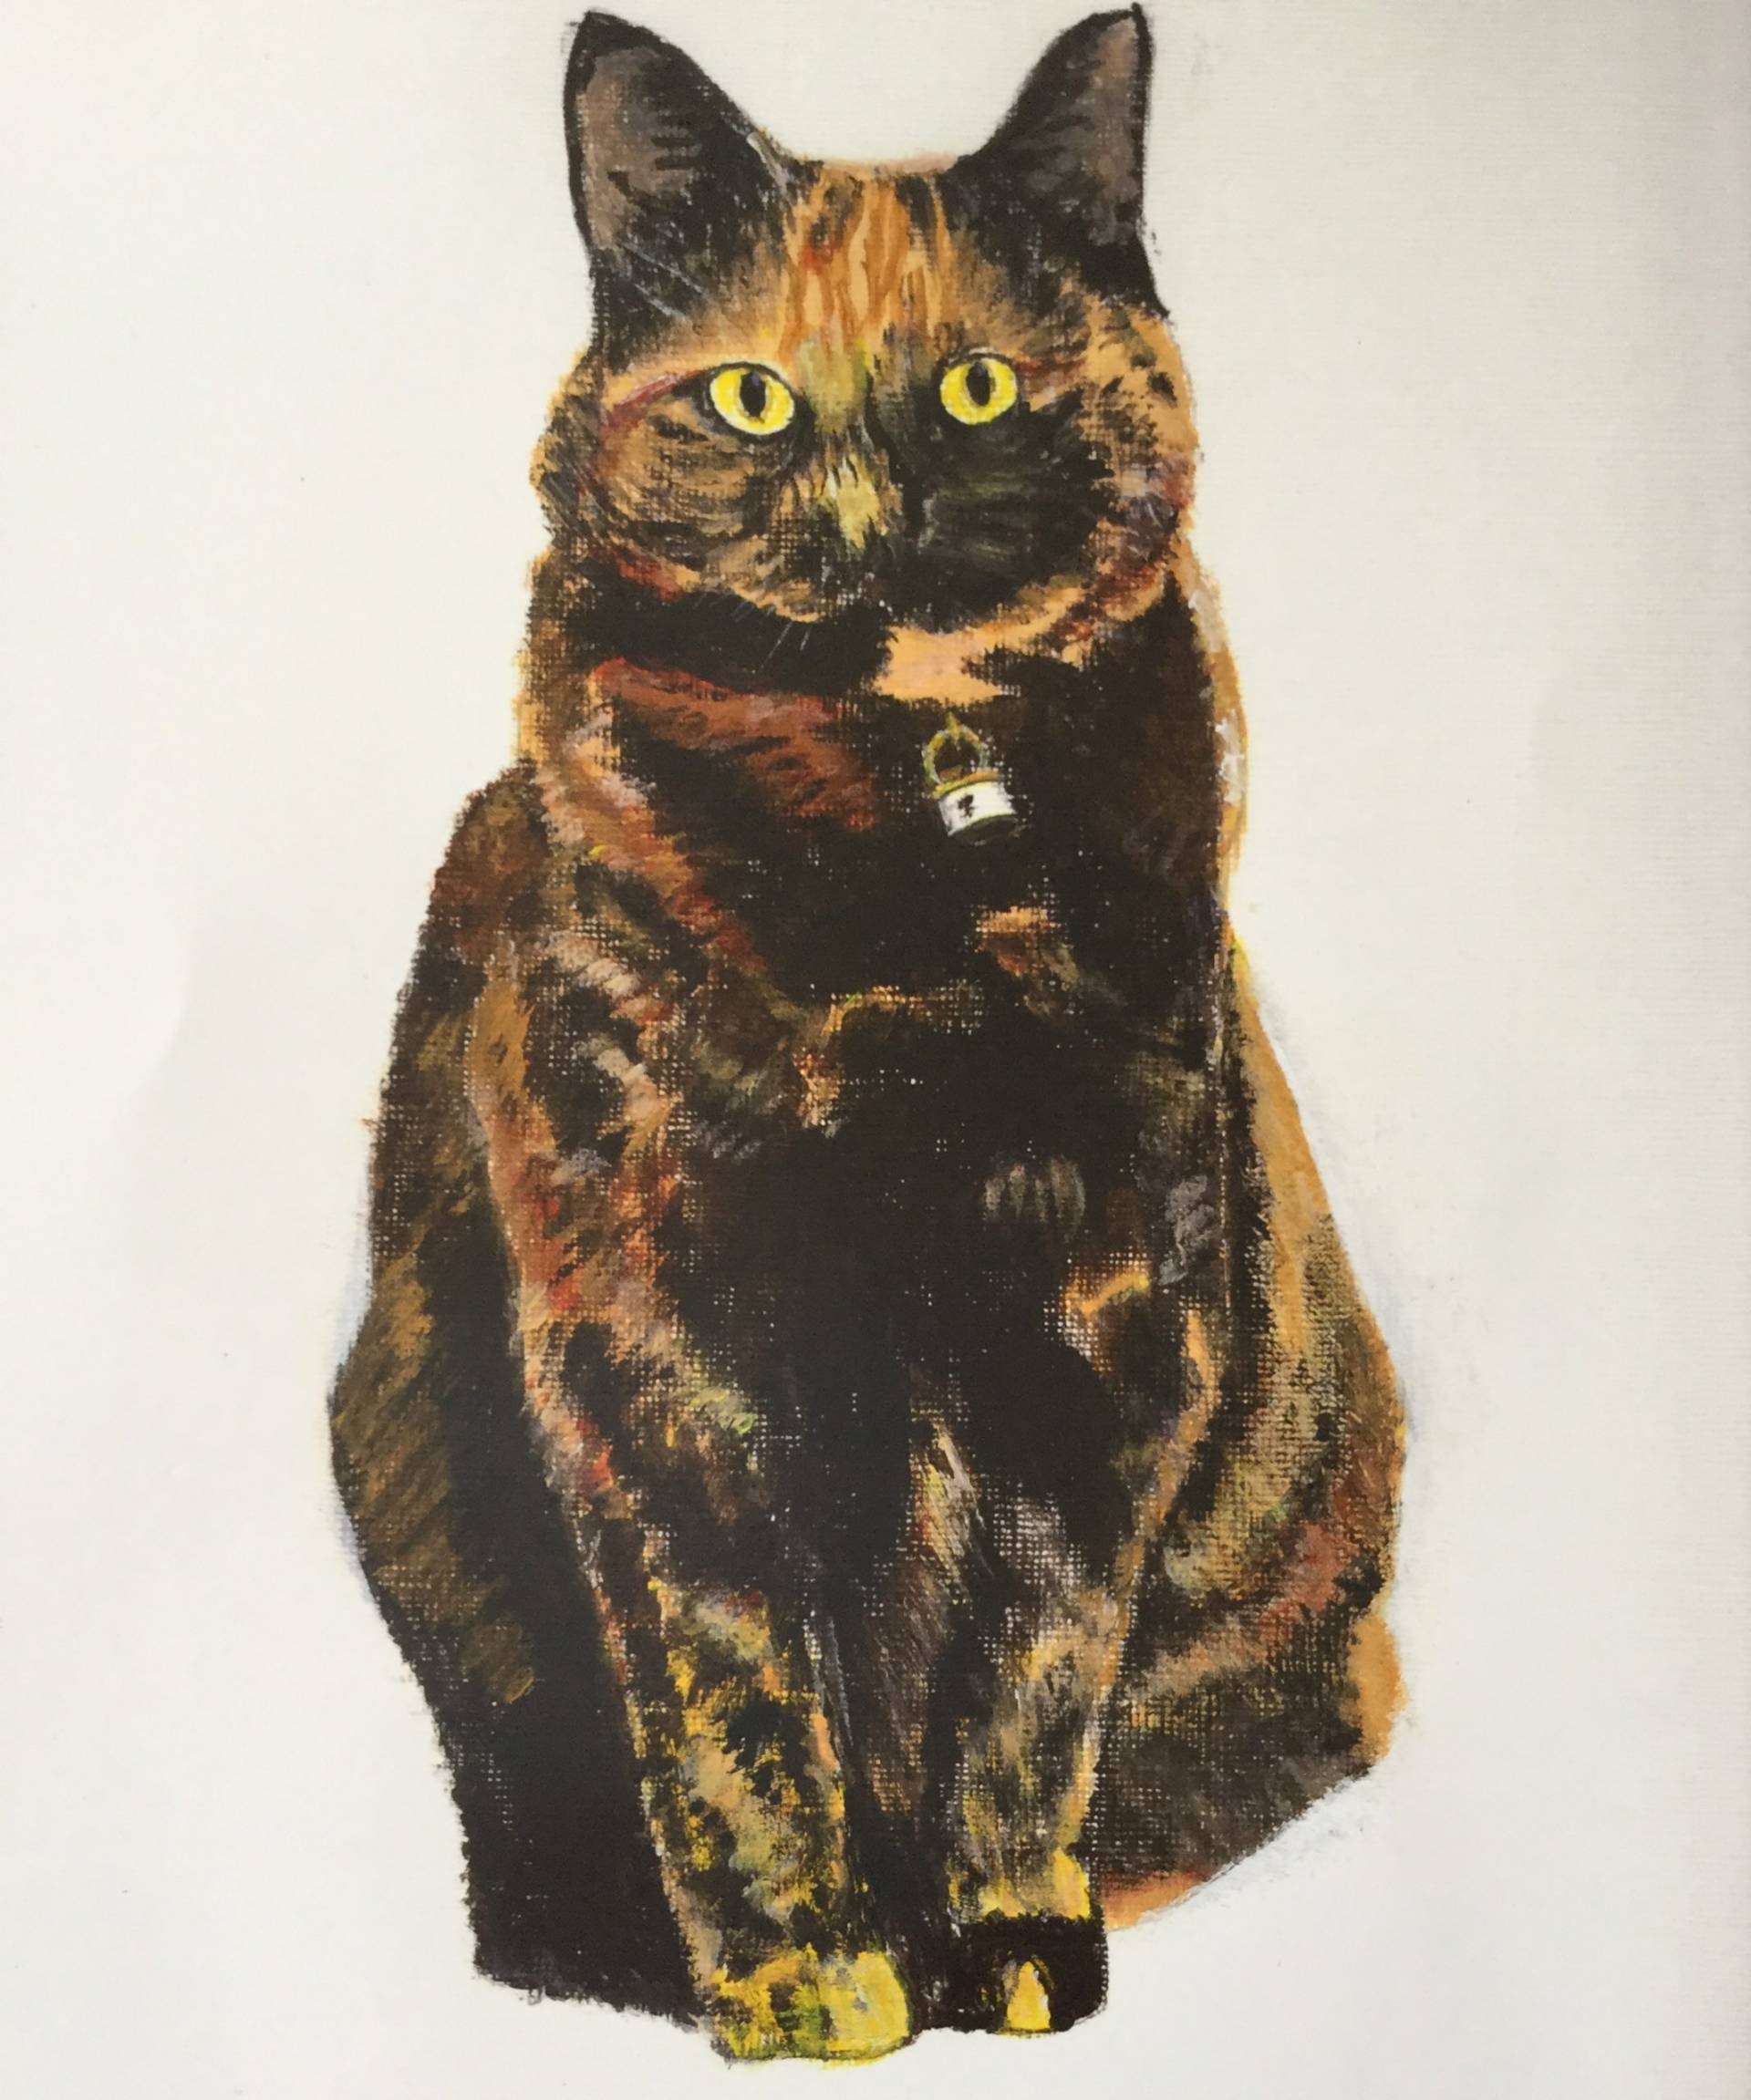 Cat by Derek Davis